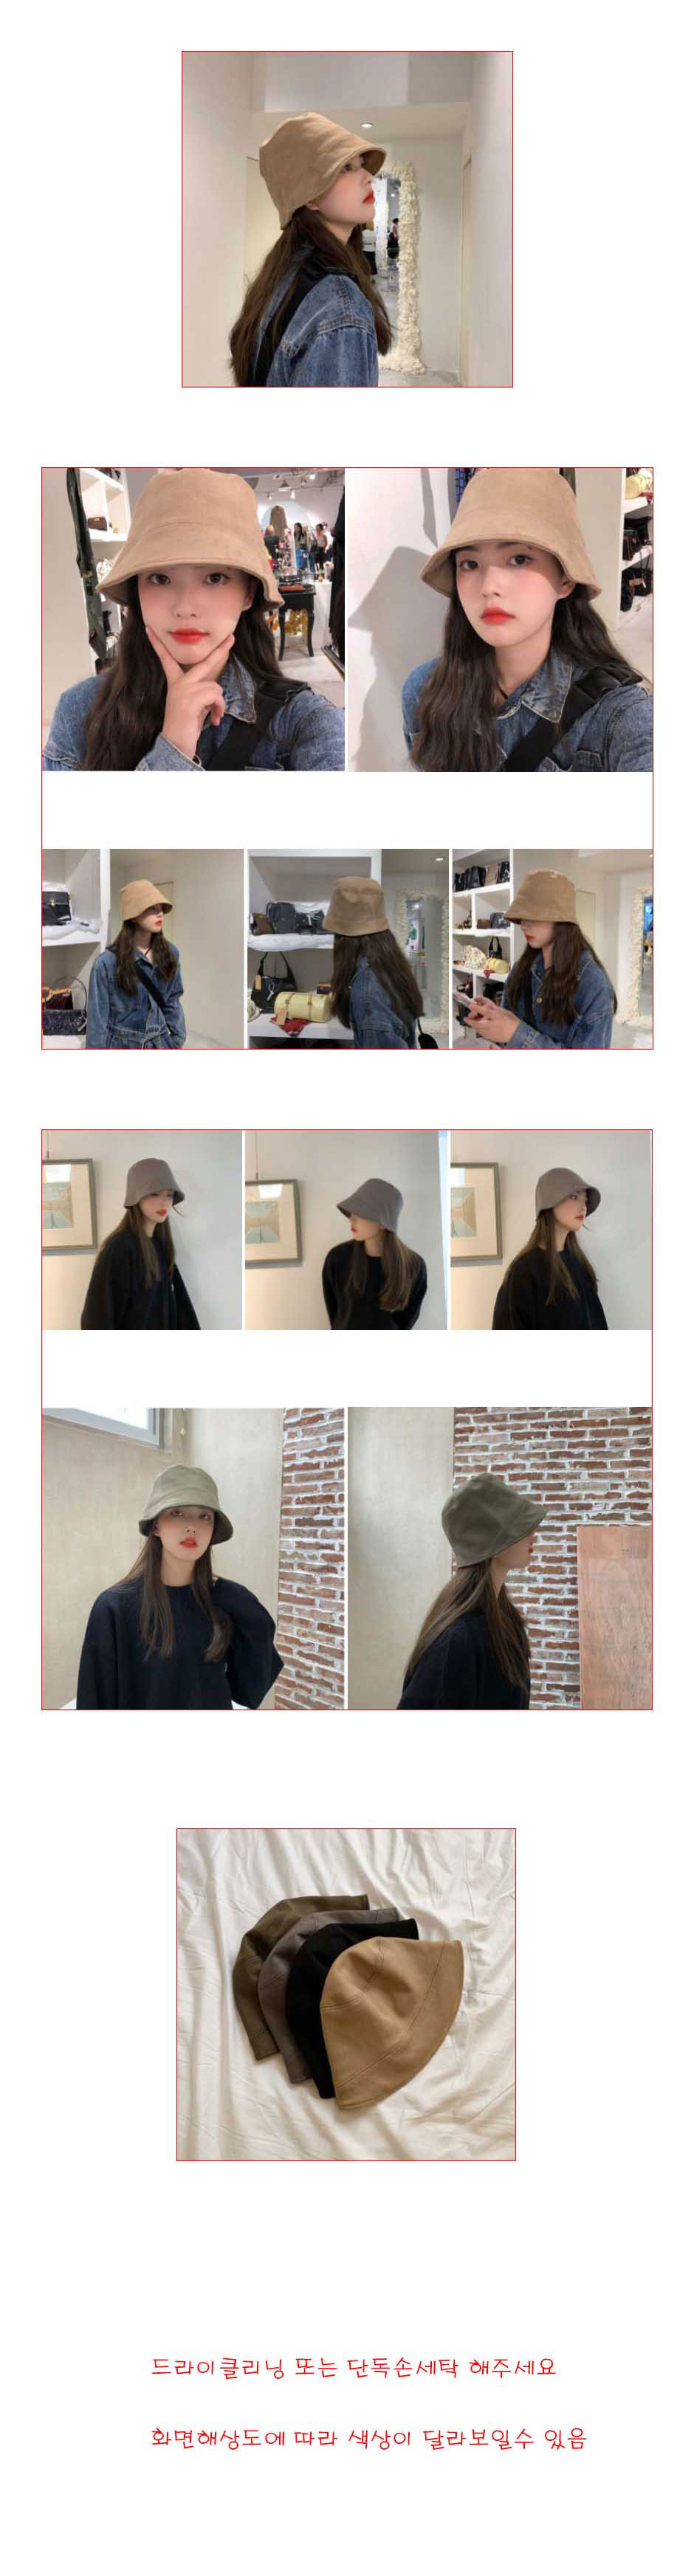 스웨이드 여성 버킷햇 벙거지 모자 23,200원 - 퍼스트앙 패션잡화, 모자, 버킷햇, 패션 바보사랑 스웨이드 여성 버킷햇 벙거지 모자 23,200원 - 퍼스트앙 패션잡화, 모자, 버킷햇, 패션 바보사랑